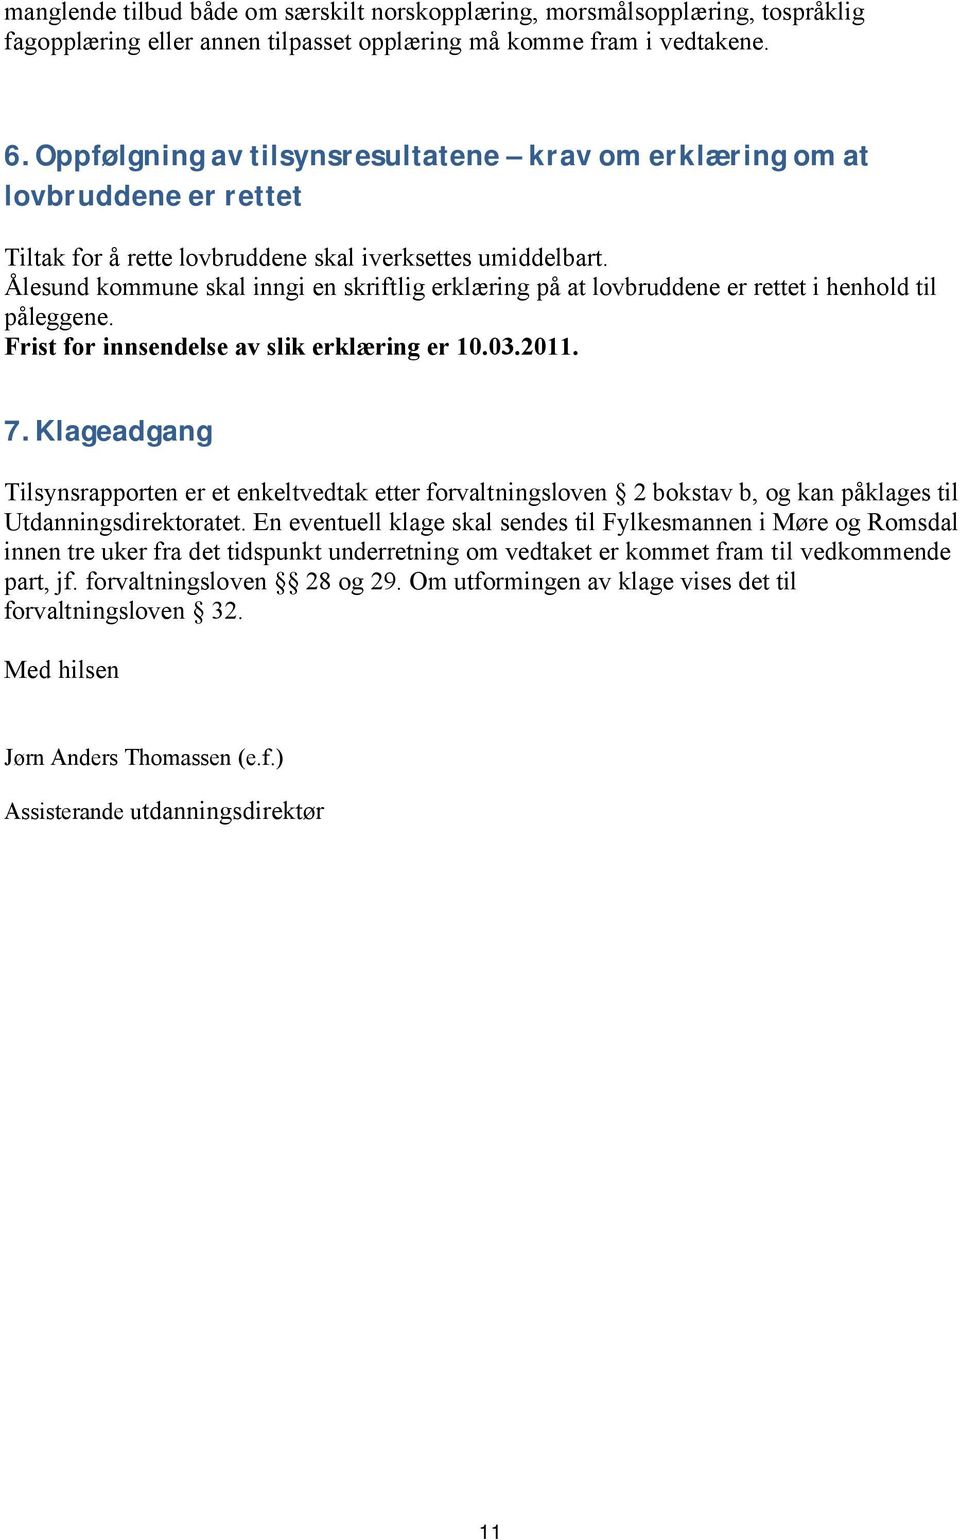 Ålesund kommune skal inngi en skriftlig erklæring på at lovbruddene er rettet i henhold til påleggene. Frist for innsendelse av slik erklæring er 10.03.2011. 7.